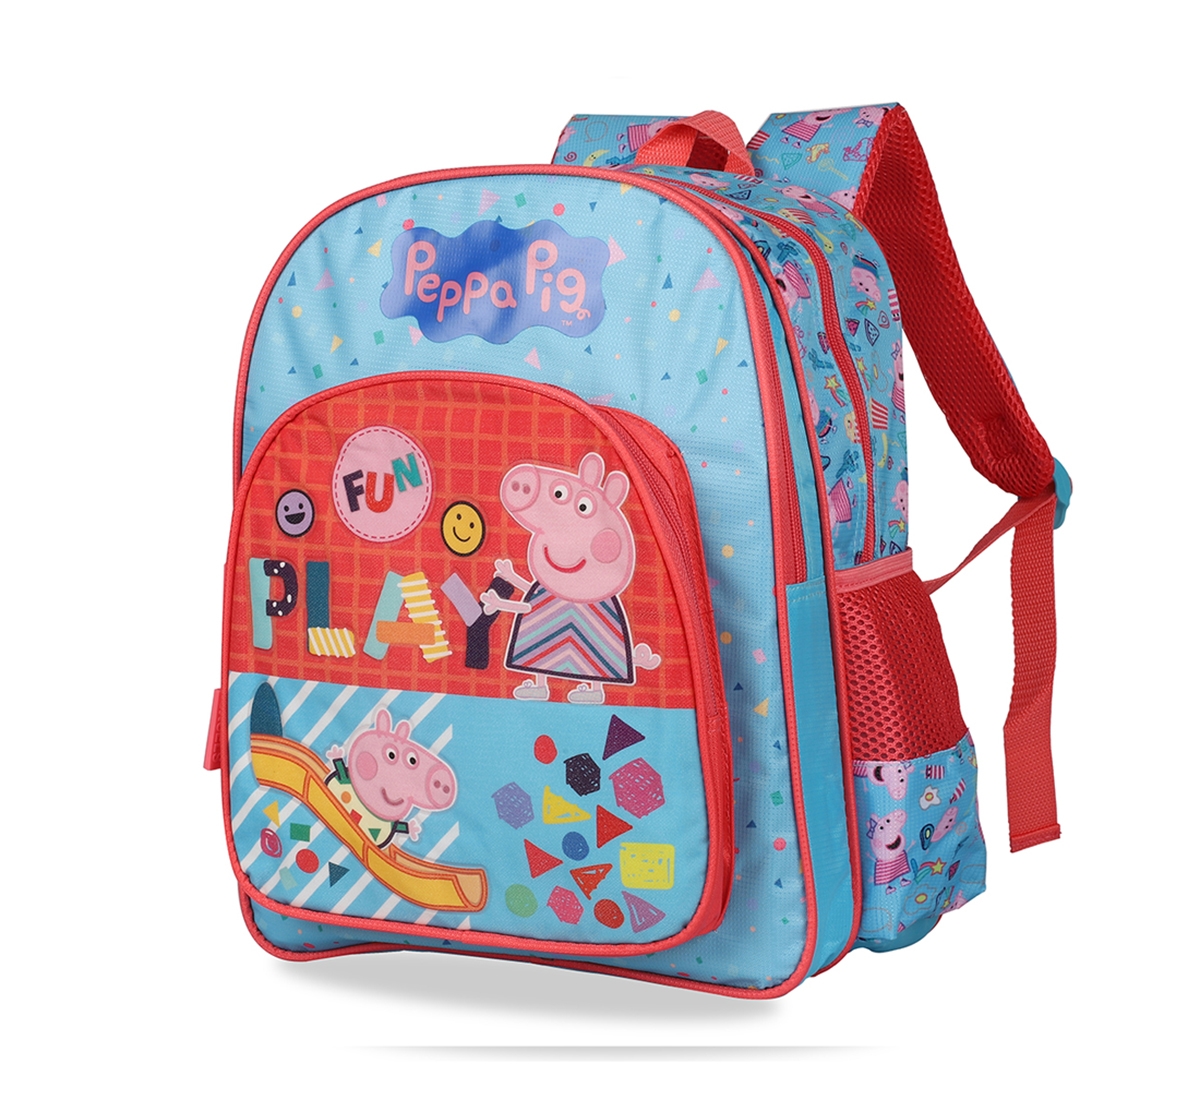 Peppa Pig | Peppa Pig Festival Selfies School Bag 36 Cm for Kids age 3Y+ (Pink) 8